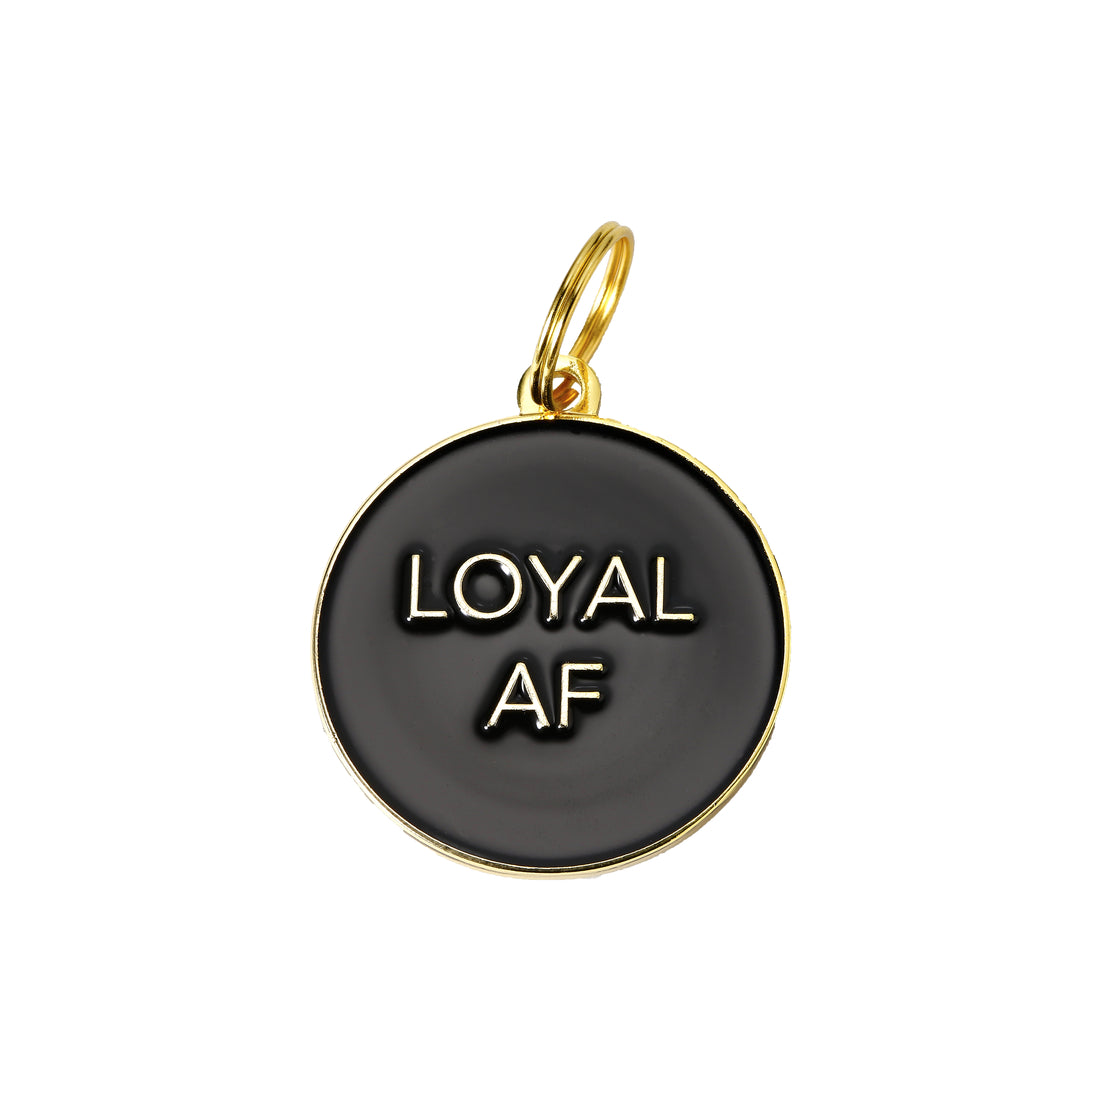 Loyal AF Dog Tag - Black